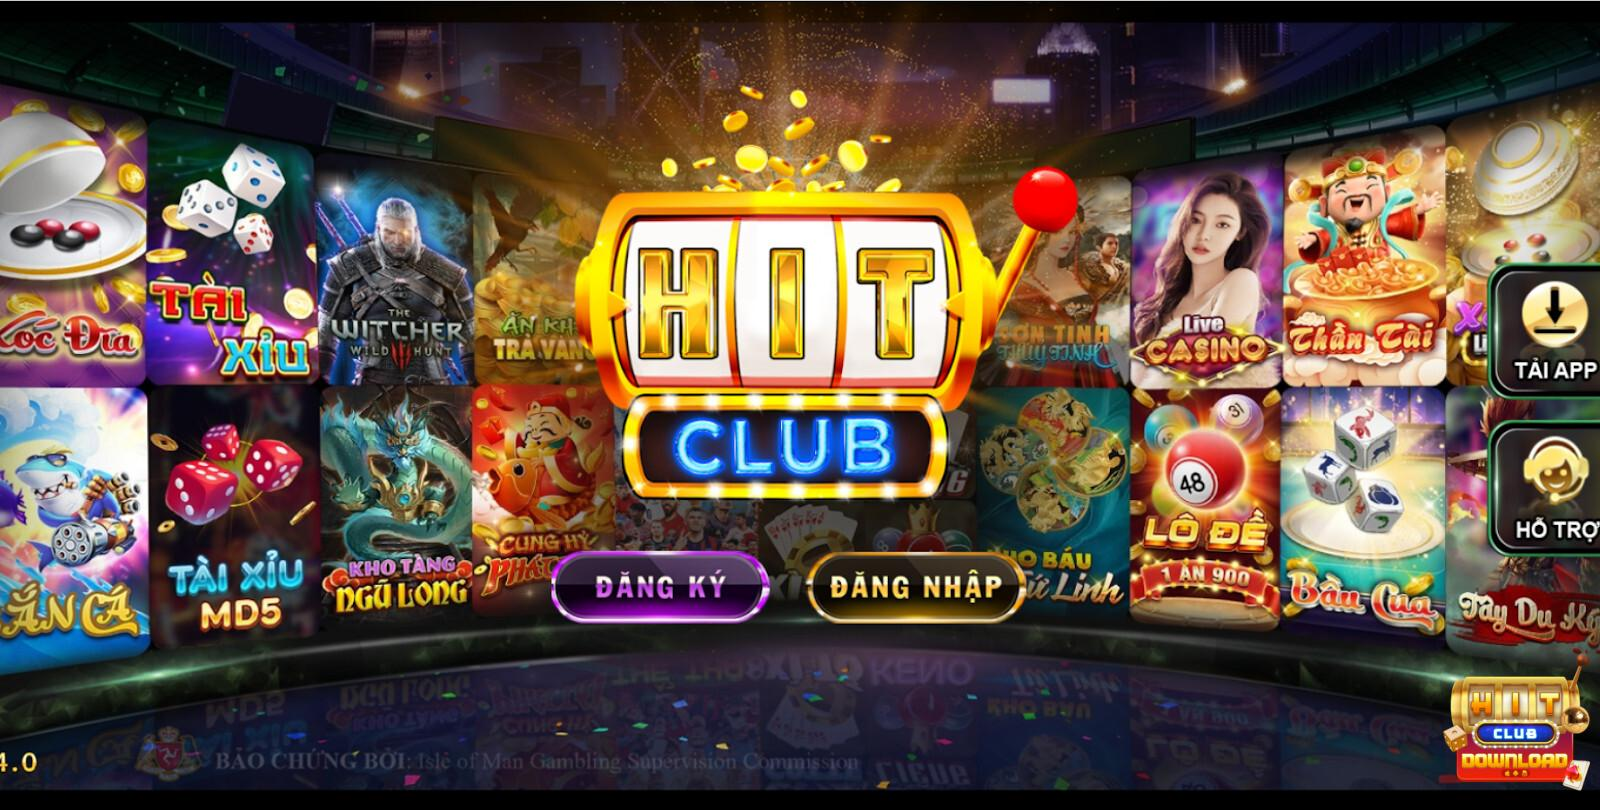 Vì sao nên tham gia cá cược tại Hit Club?